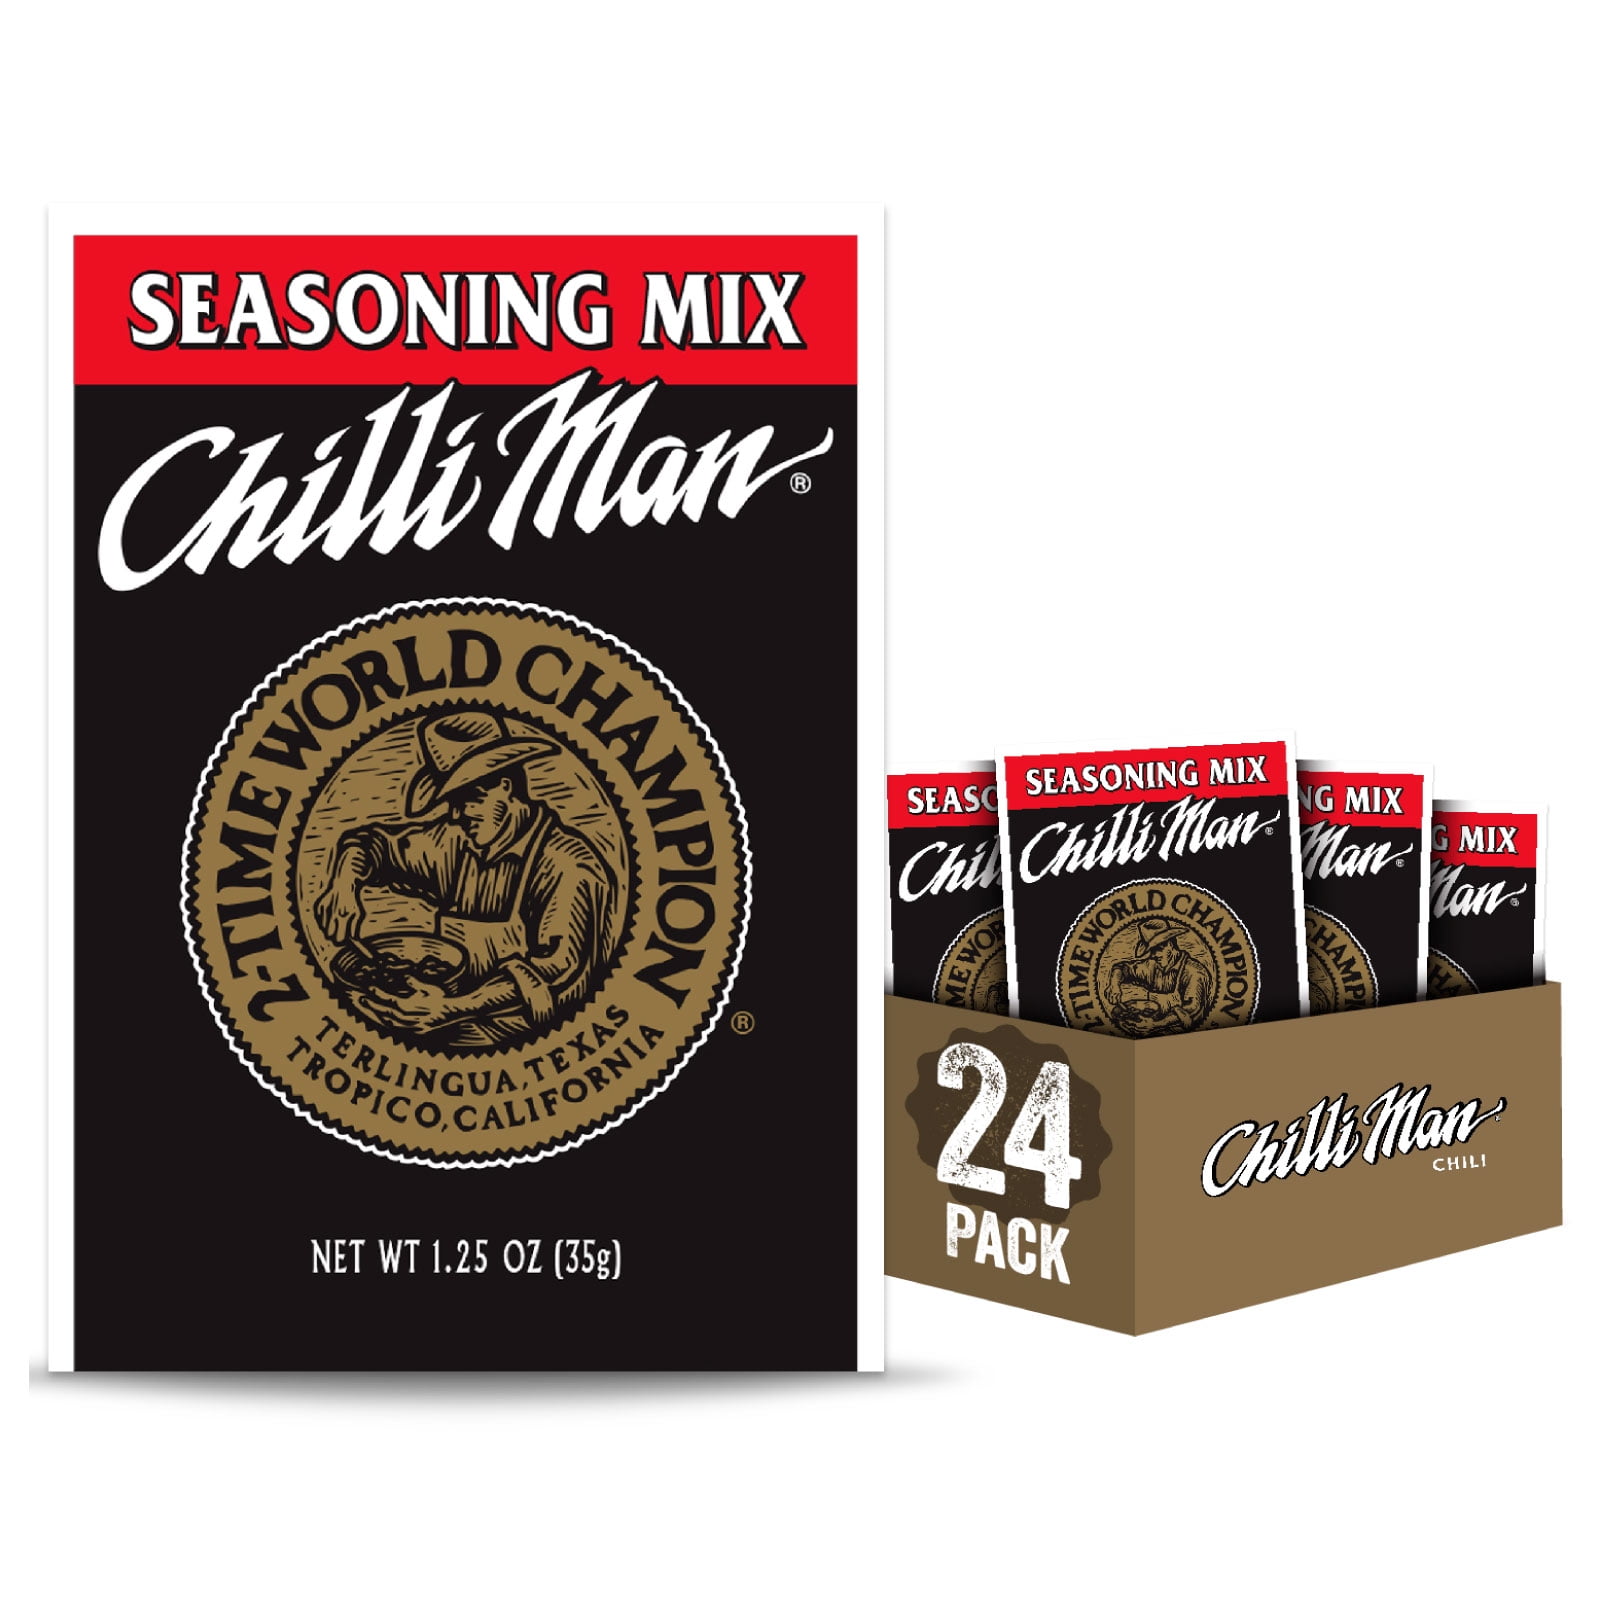 Chili Seasoning Mix (4 Pack)